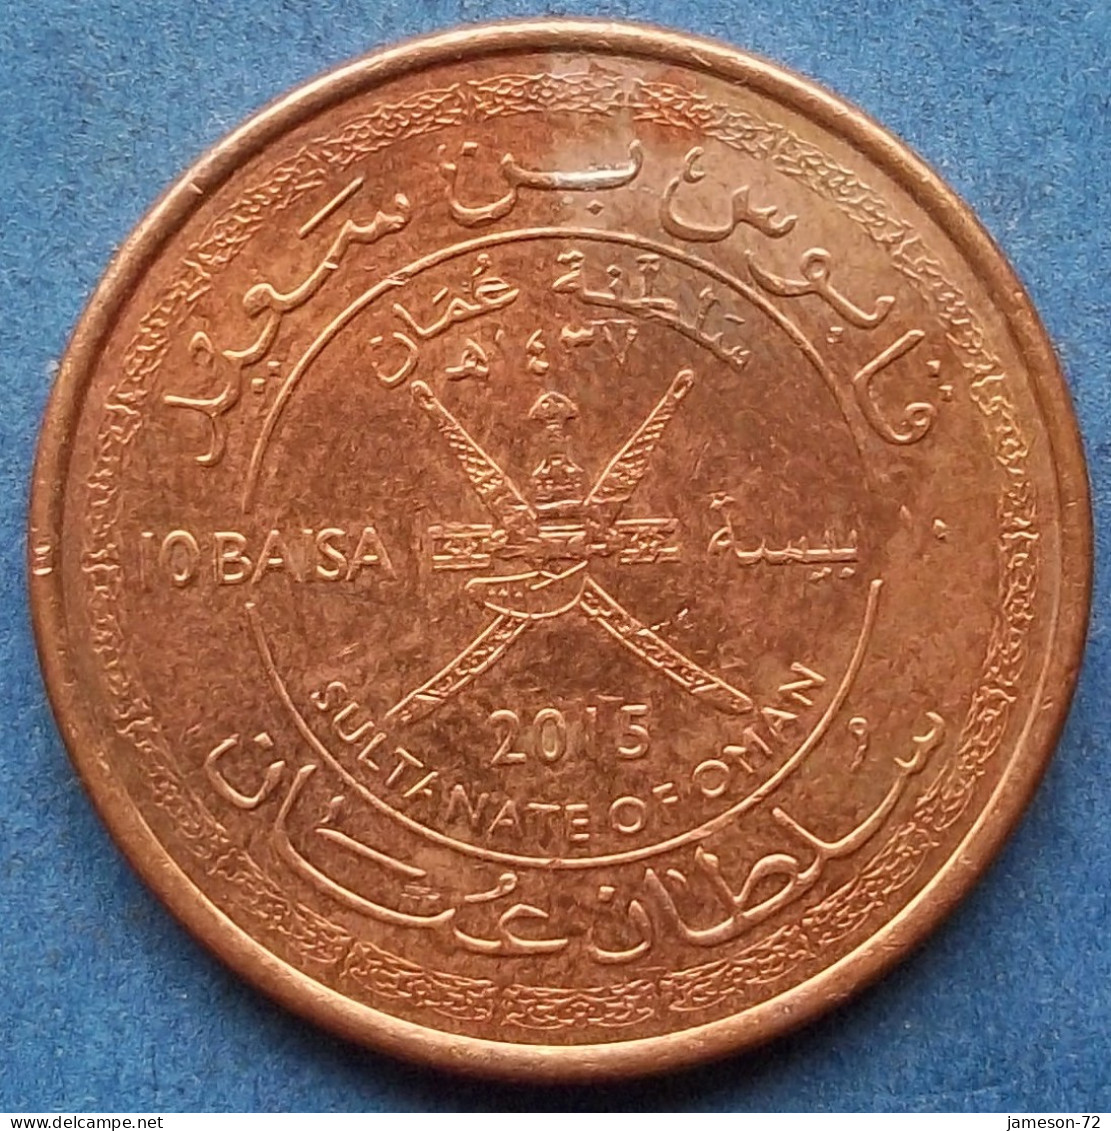 OMAN - 10 Baisa AH1437 2015AD KM# 194 Sultan Quabus Bin Sa'id Reform Coinage (1972) - Edelweiss Coins - Oman